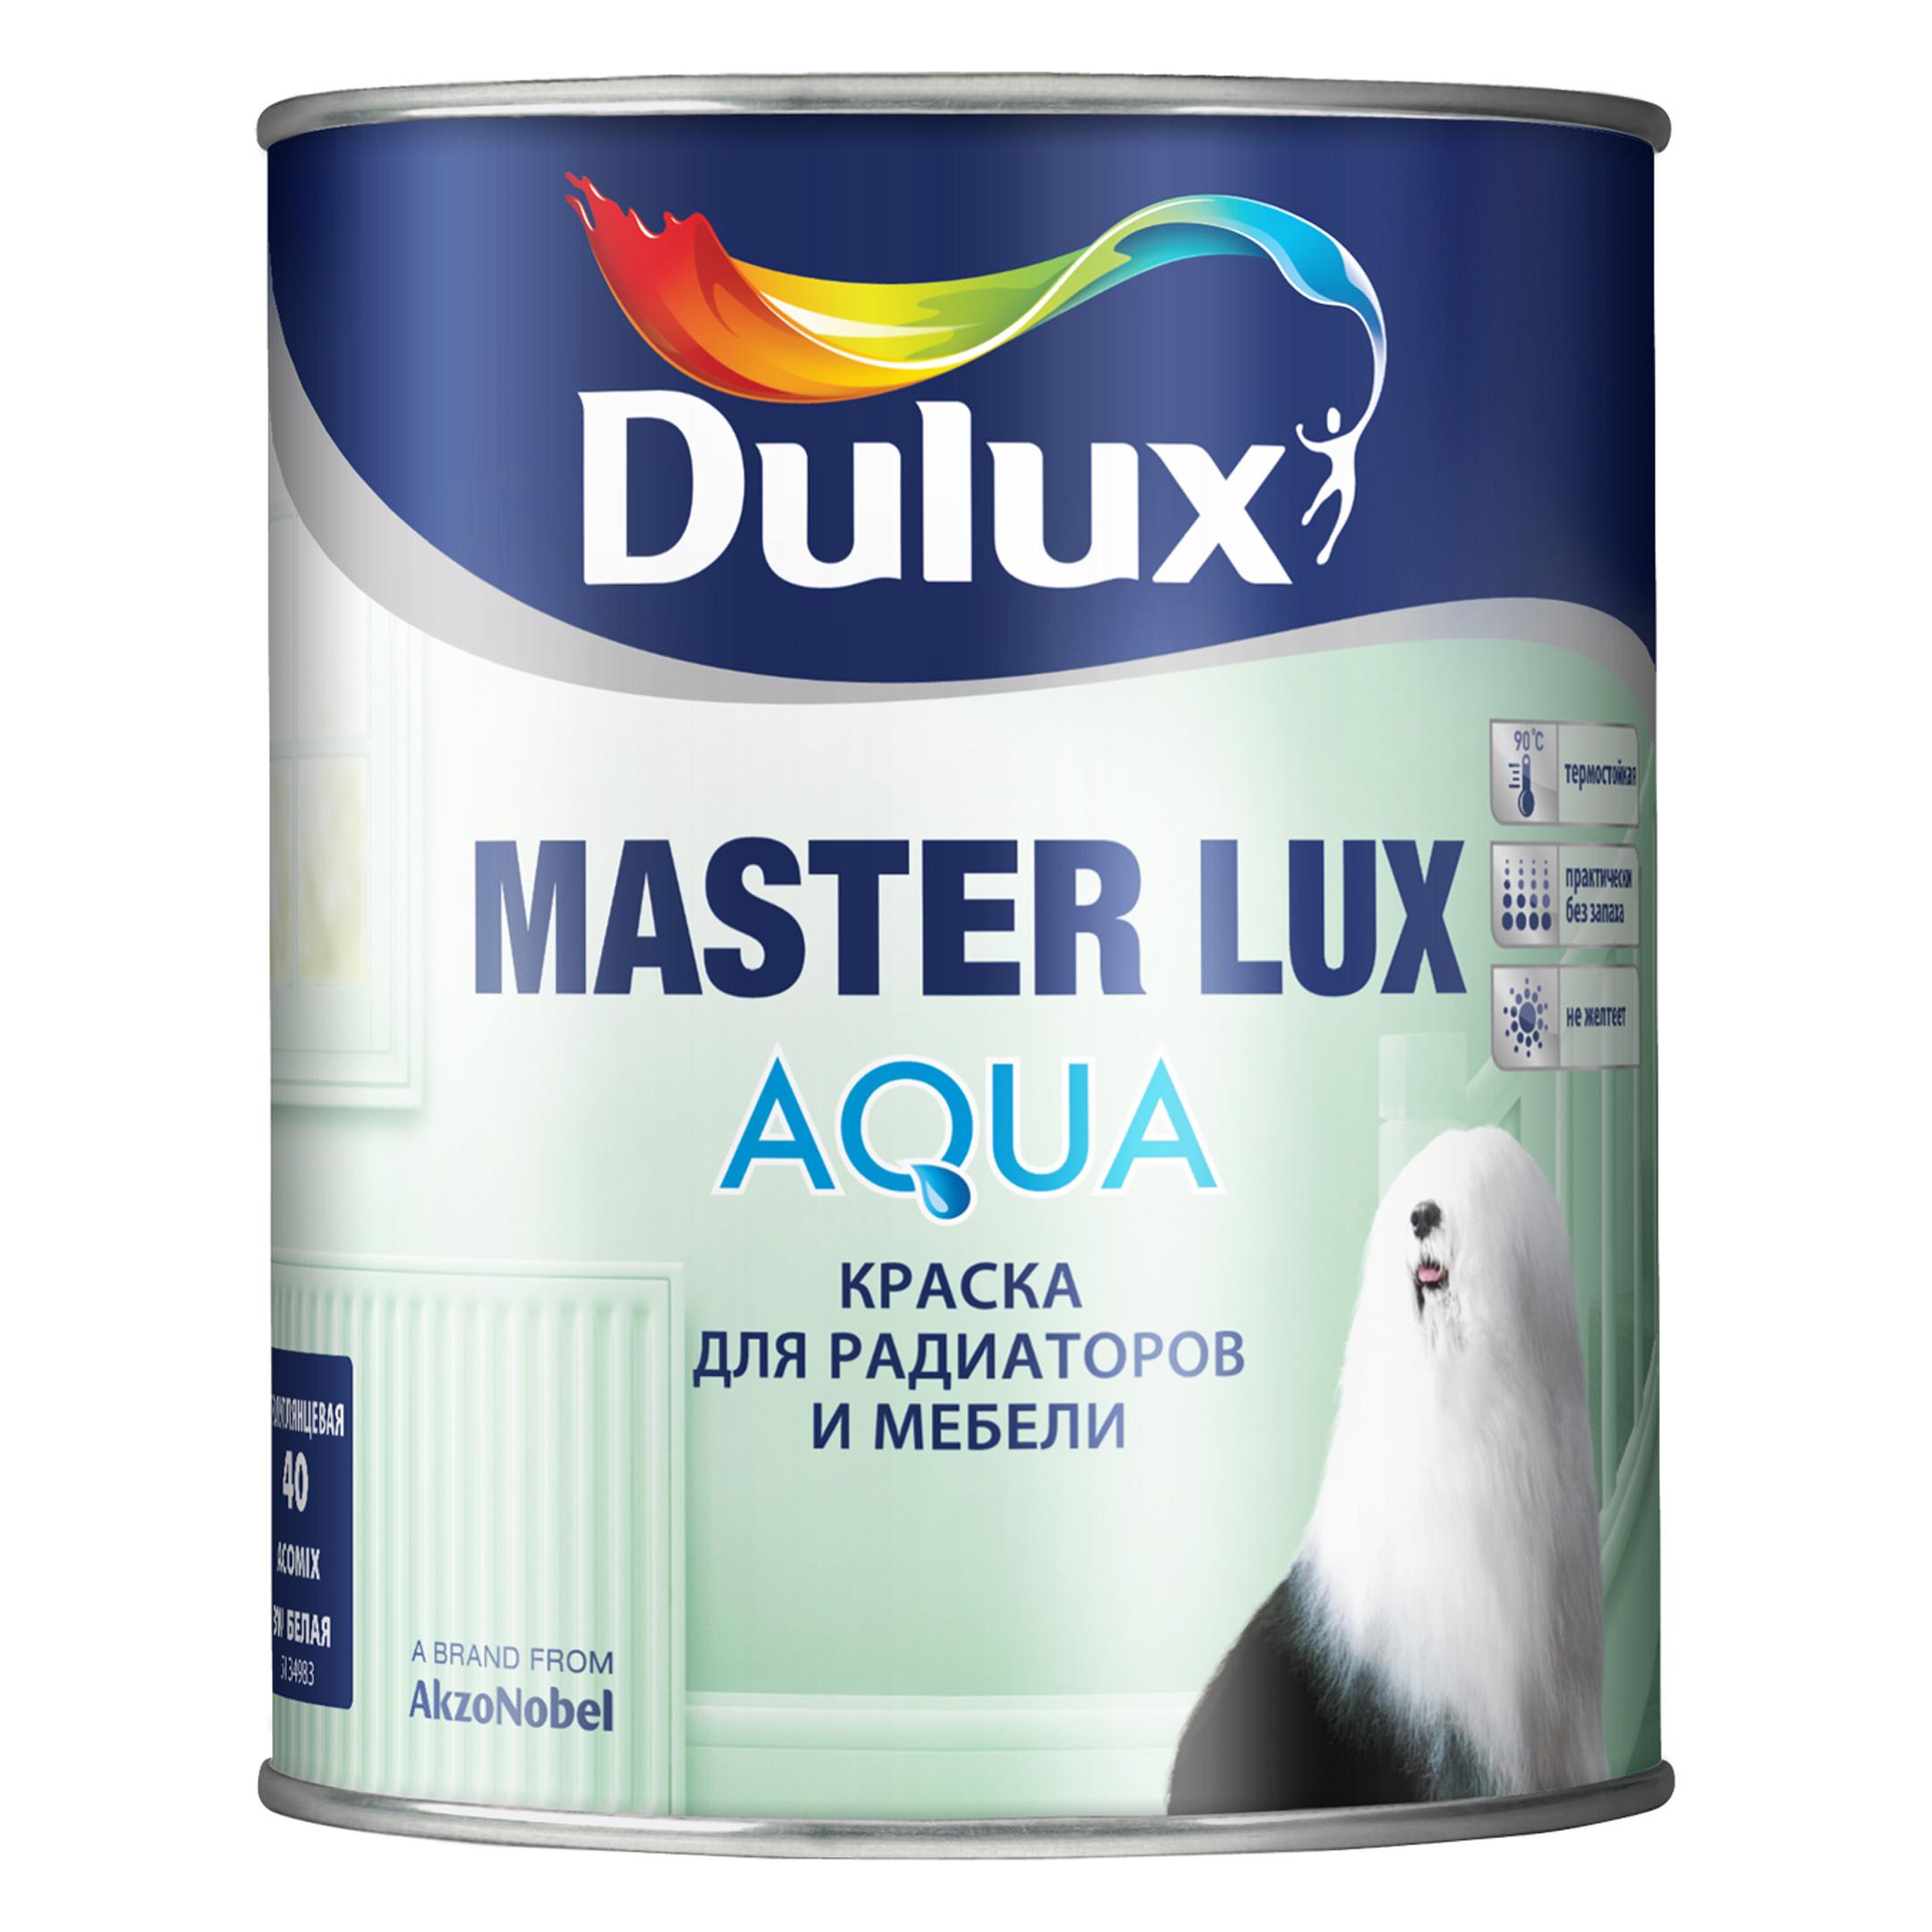 фото Краска master lux aqua 40 bw белая 3 л dulux